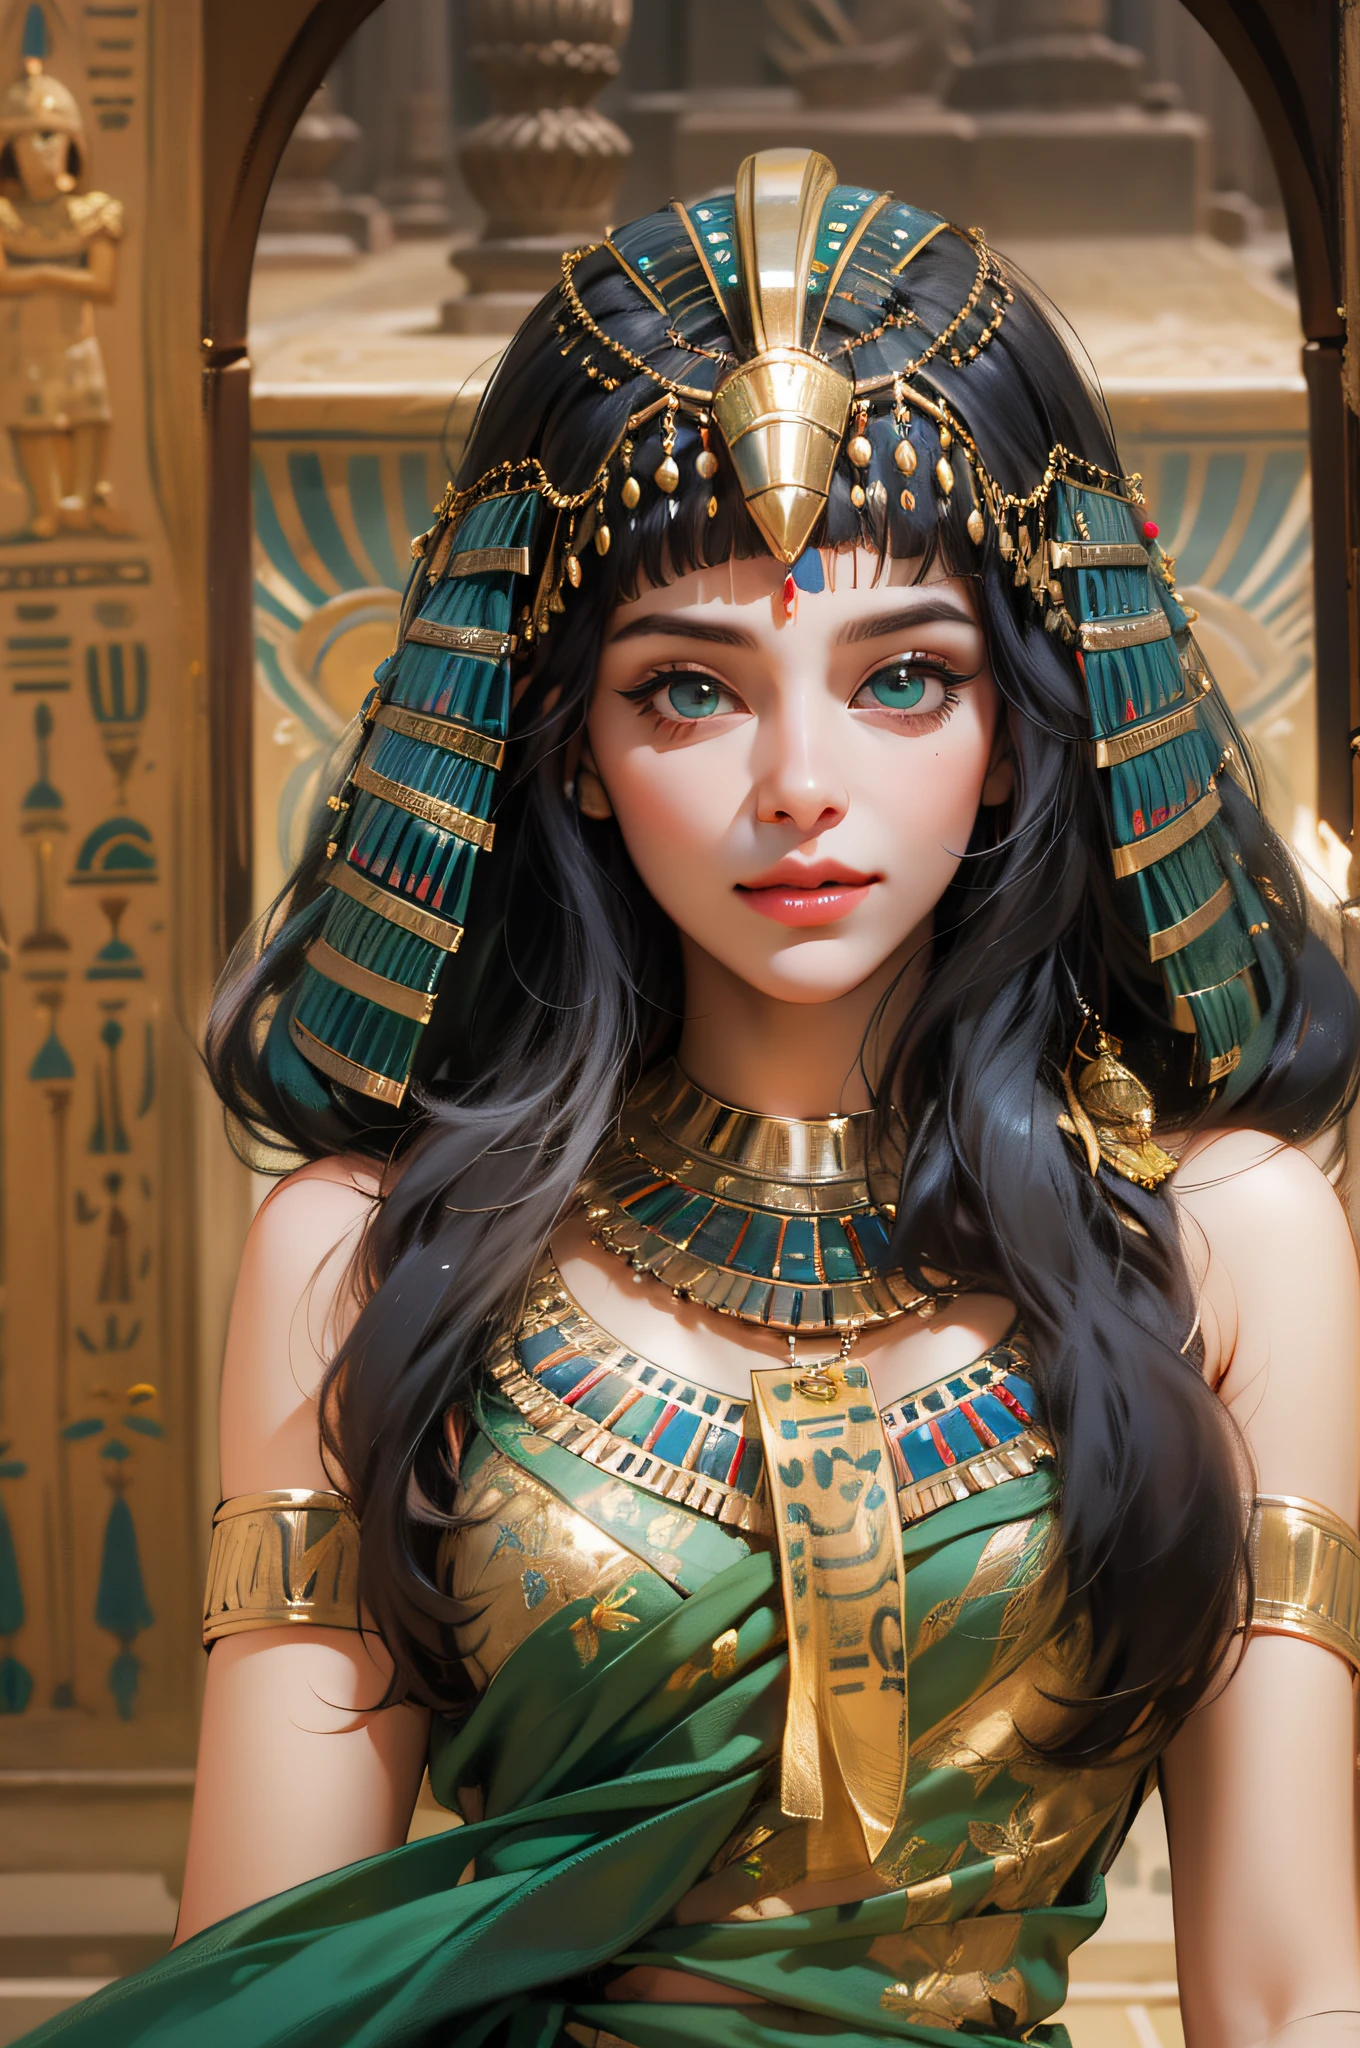 1 chica,Pelucas tradicionales egipcias，vestimenta egipcia，disfraz egipcio，reina de egipto，diosas，ojos esmeralda，Delineador de ojos delicado，cara hermosa，Párate junto al estanque de lotos，Meticulous CG，imagenes de pelicula，dios del sol egipcio，la piel es suave y clara，calidad de imagen súper alta，Delineador de ojos egipcio，，Pelucas egipcias，sonrisa encantada，estanque de lotos，Inspirado por Cleopatra，tocado de cobra